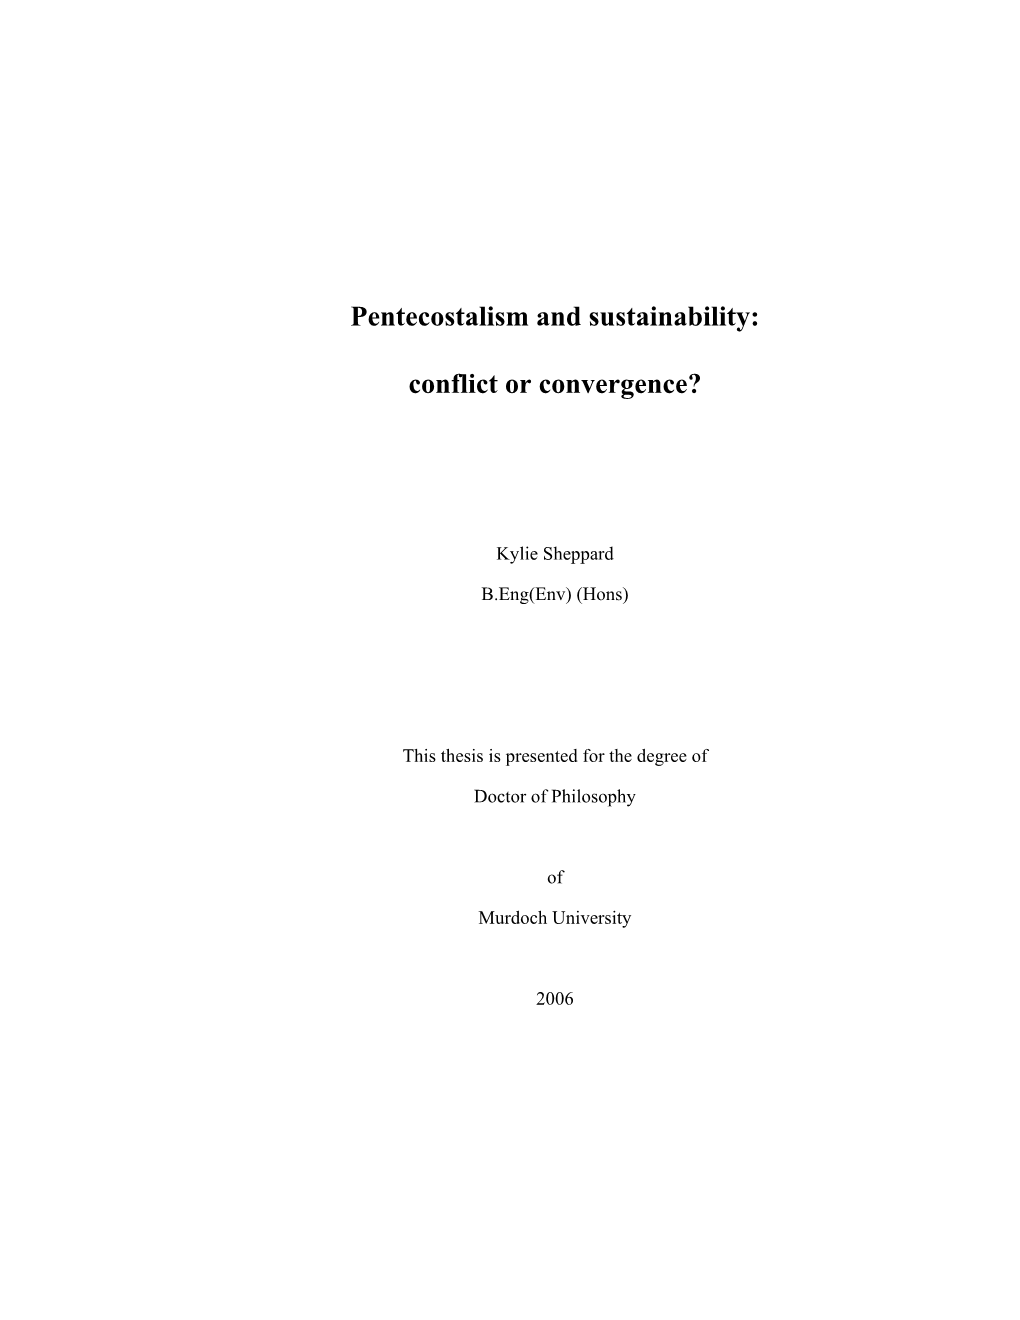 Pentecostalism and Sustainability